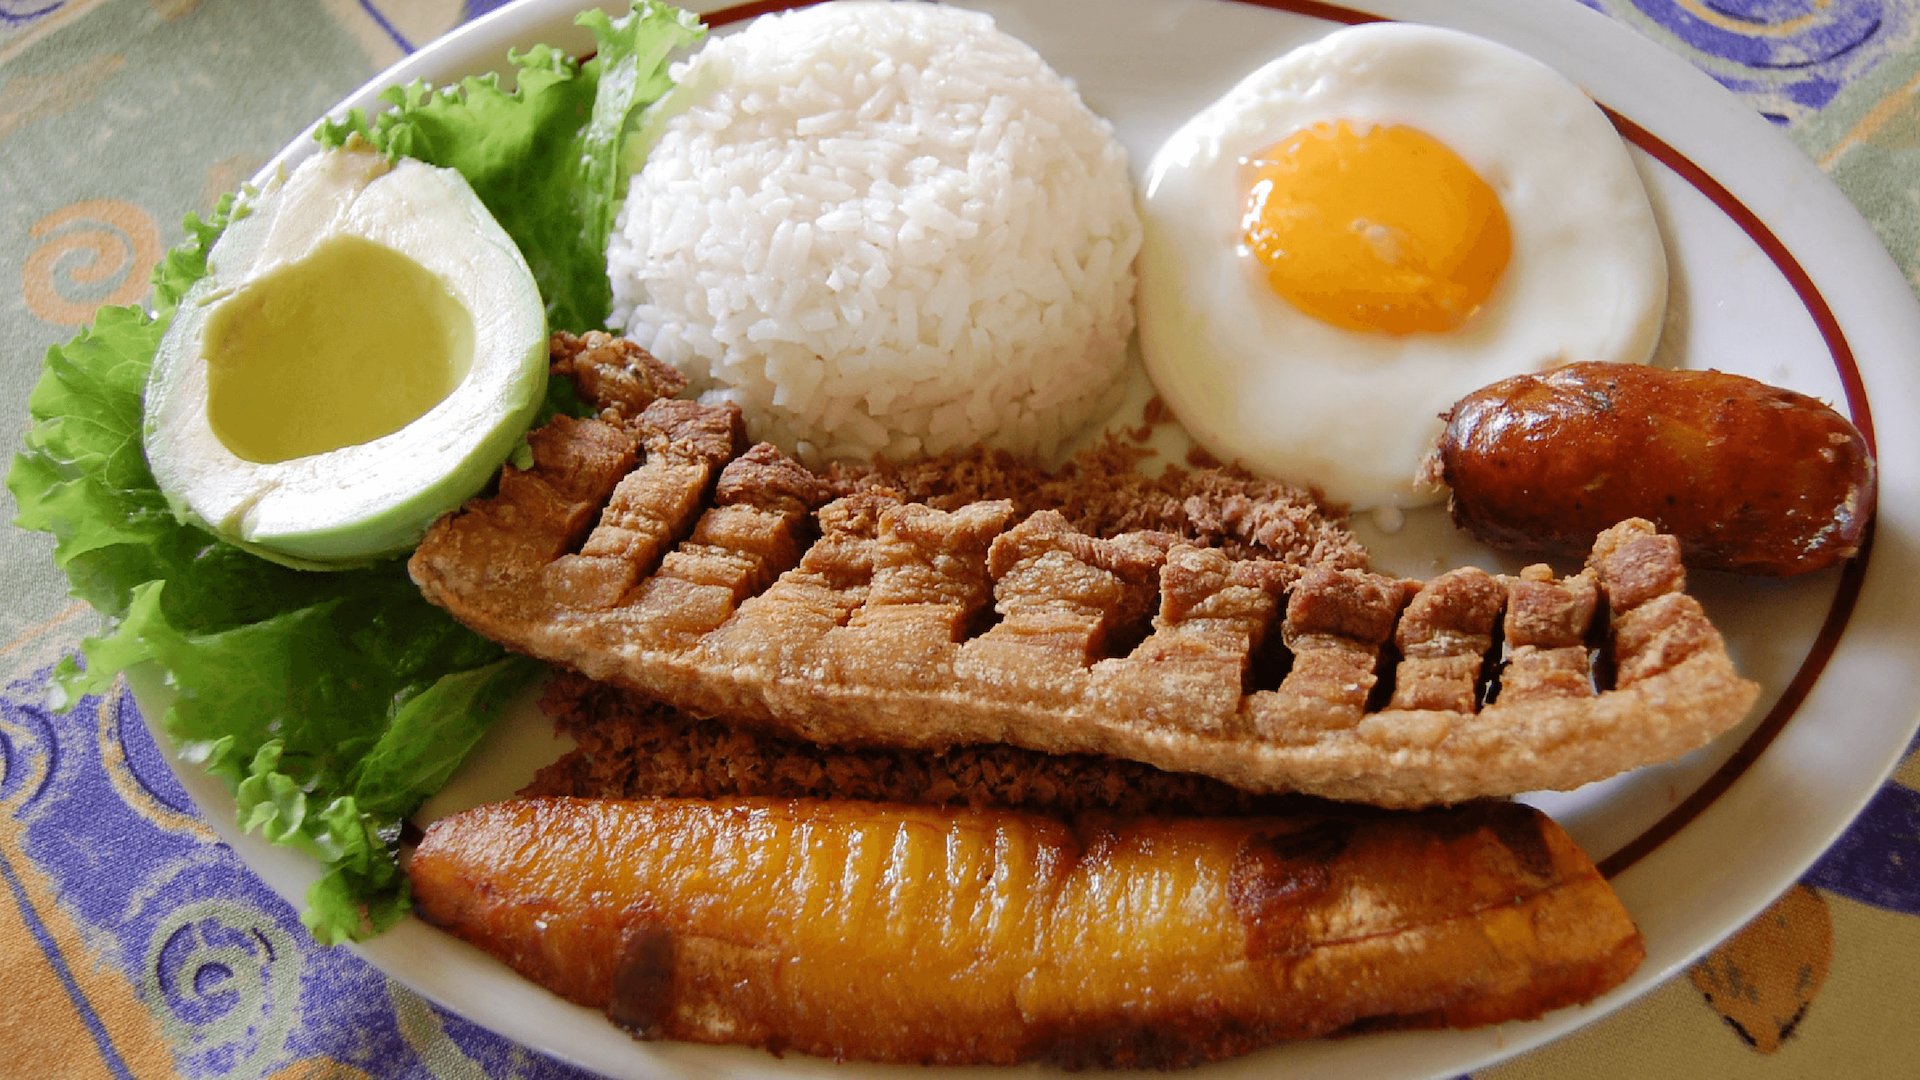 Cuáles son los platos y comidas típicas de Colombia? — Conocedores.com